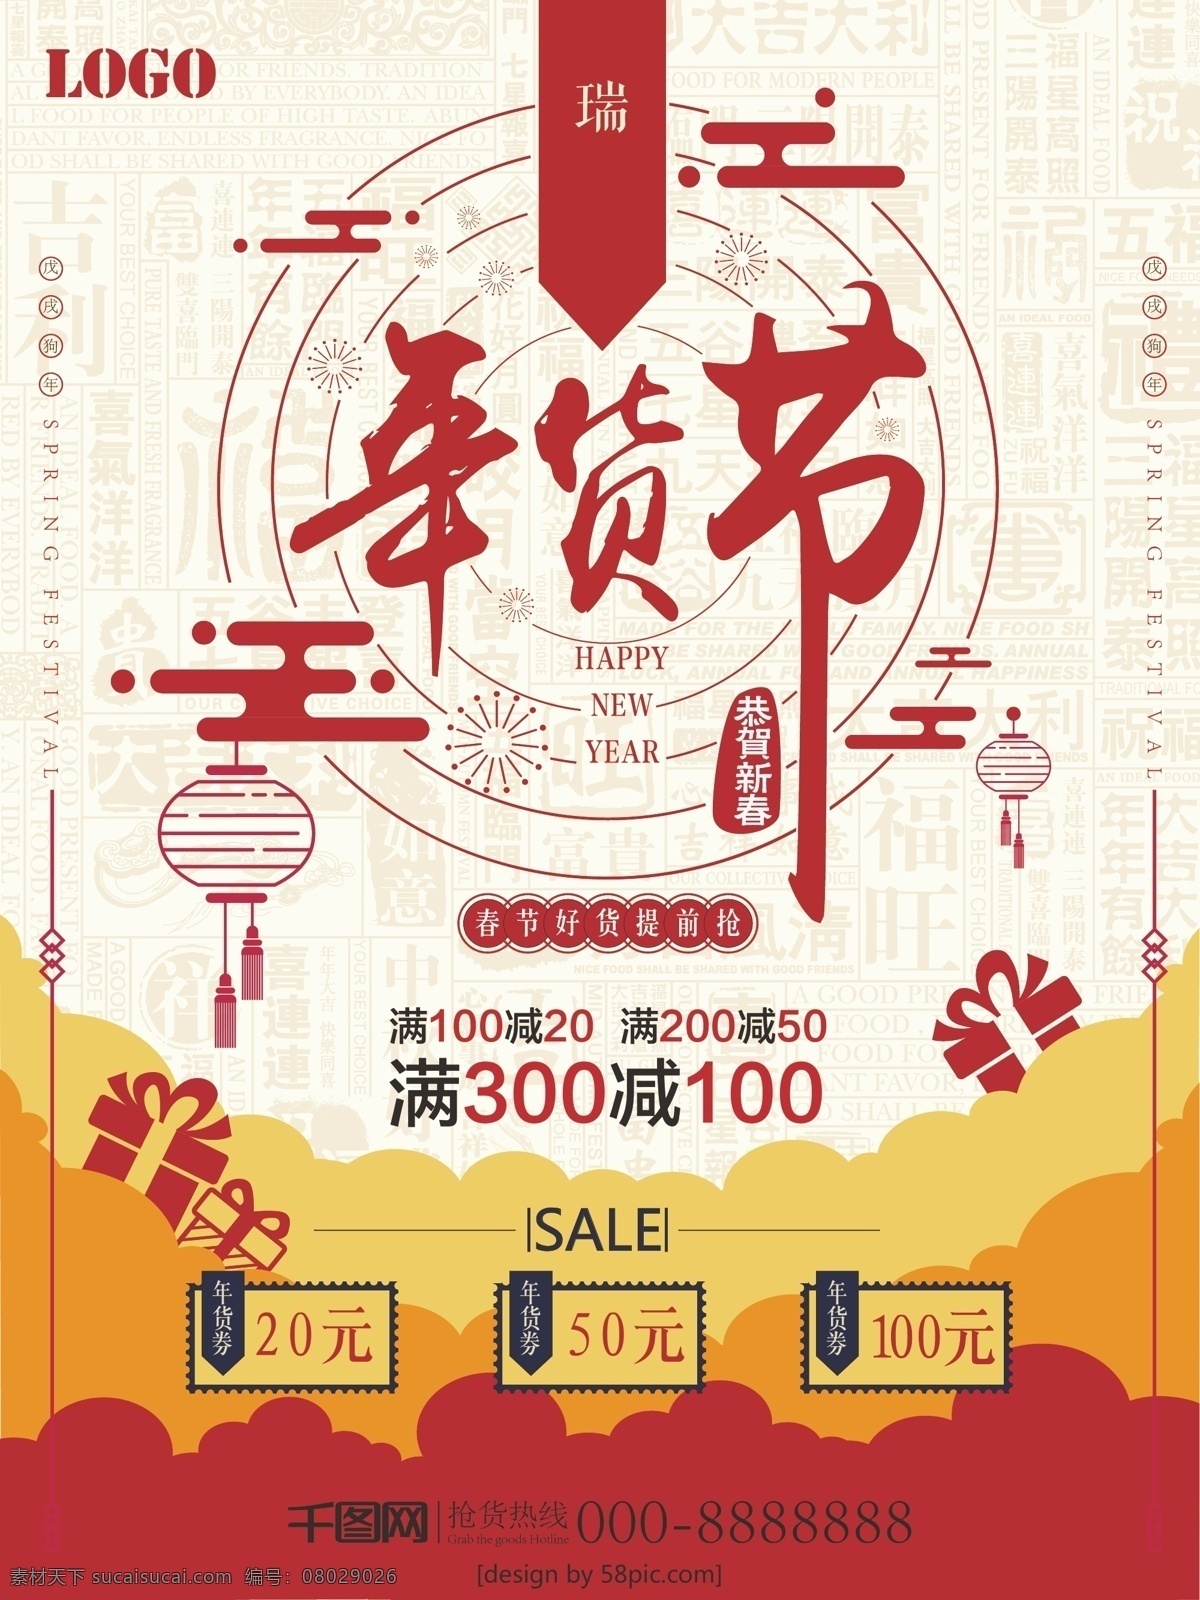 扁平 年货 节 节日 海报 2018 传统 促销 年货节 喜庆 中国好年货